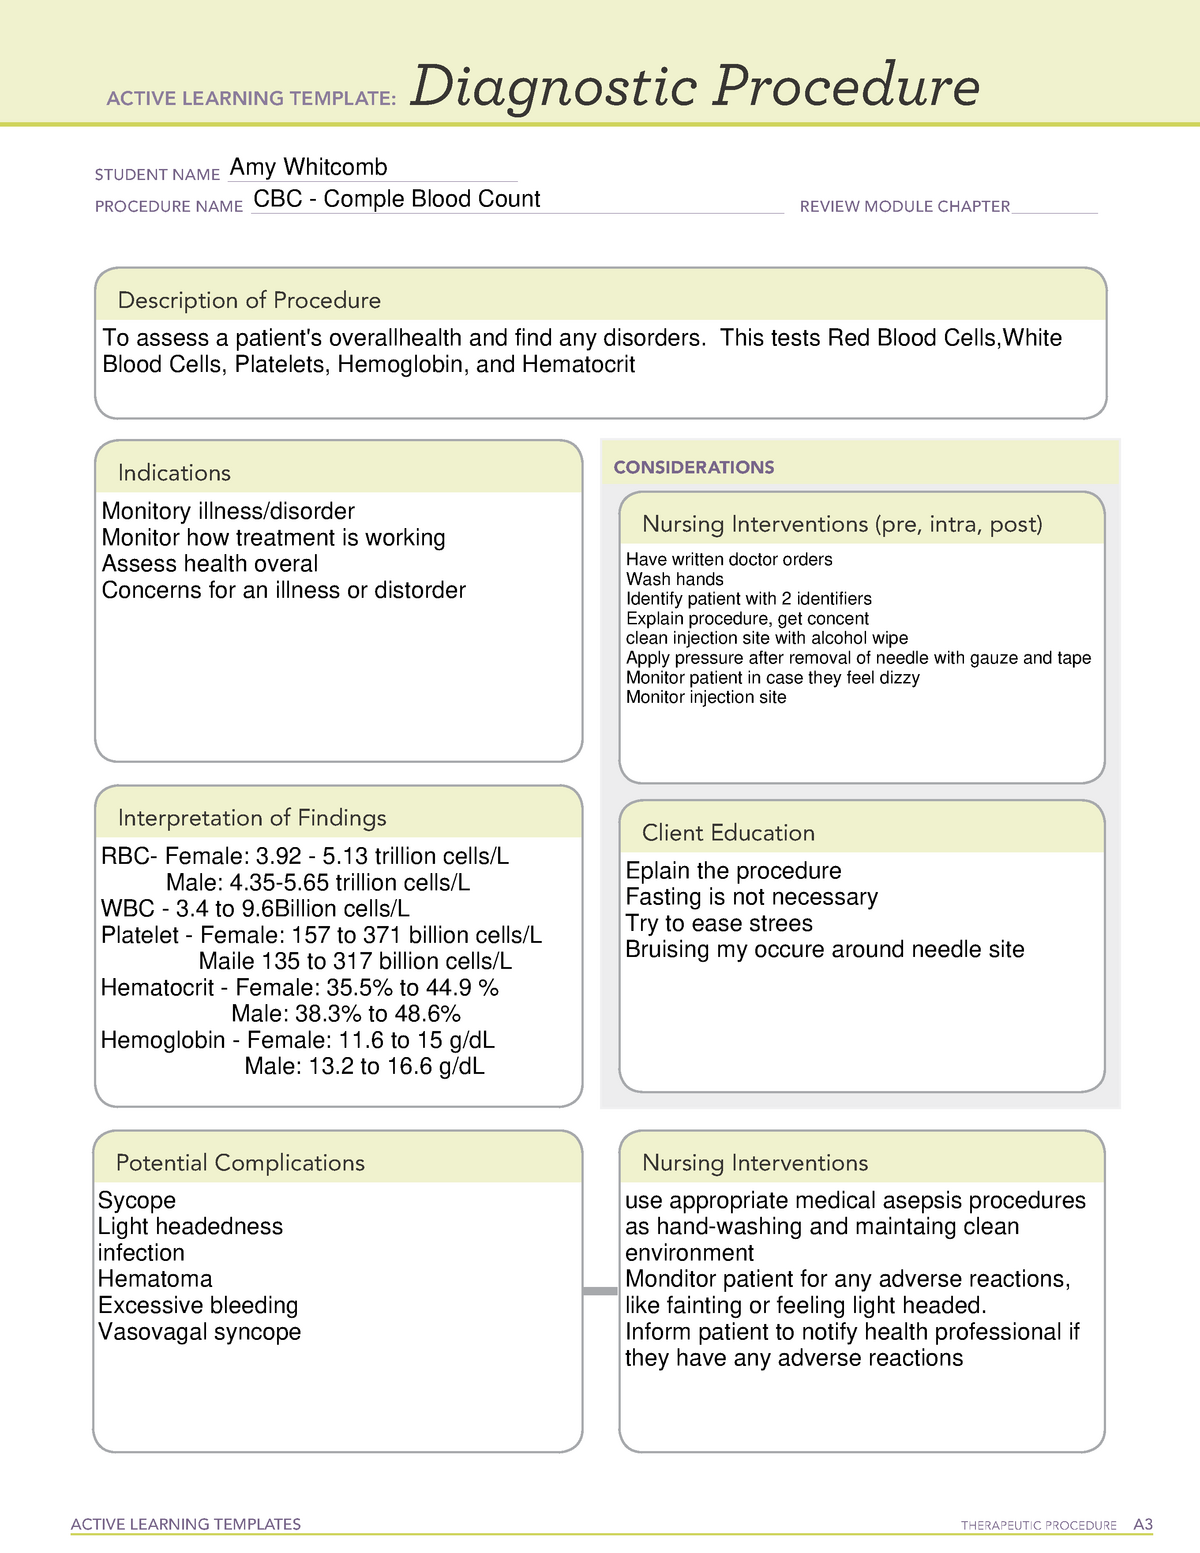 ati-cbc-diagnostic-procedure-active-learning-templates-therapeutic